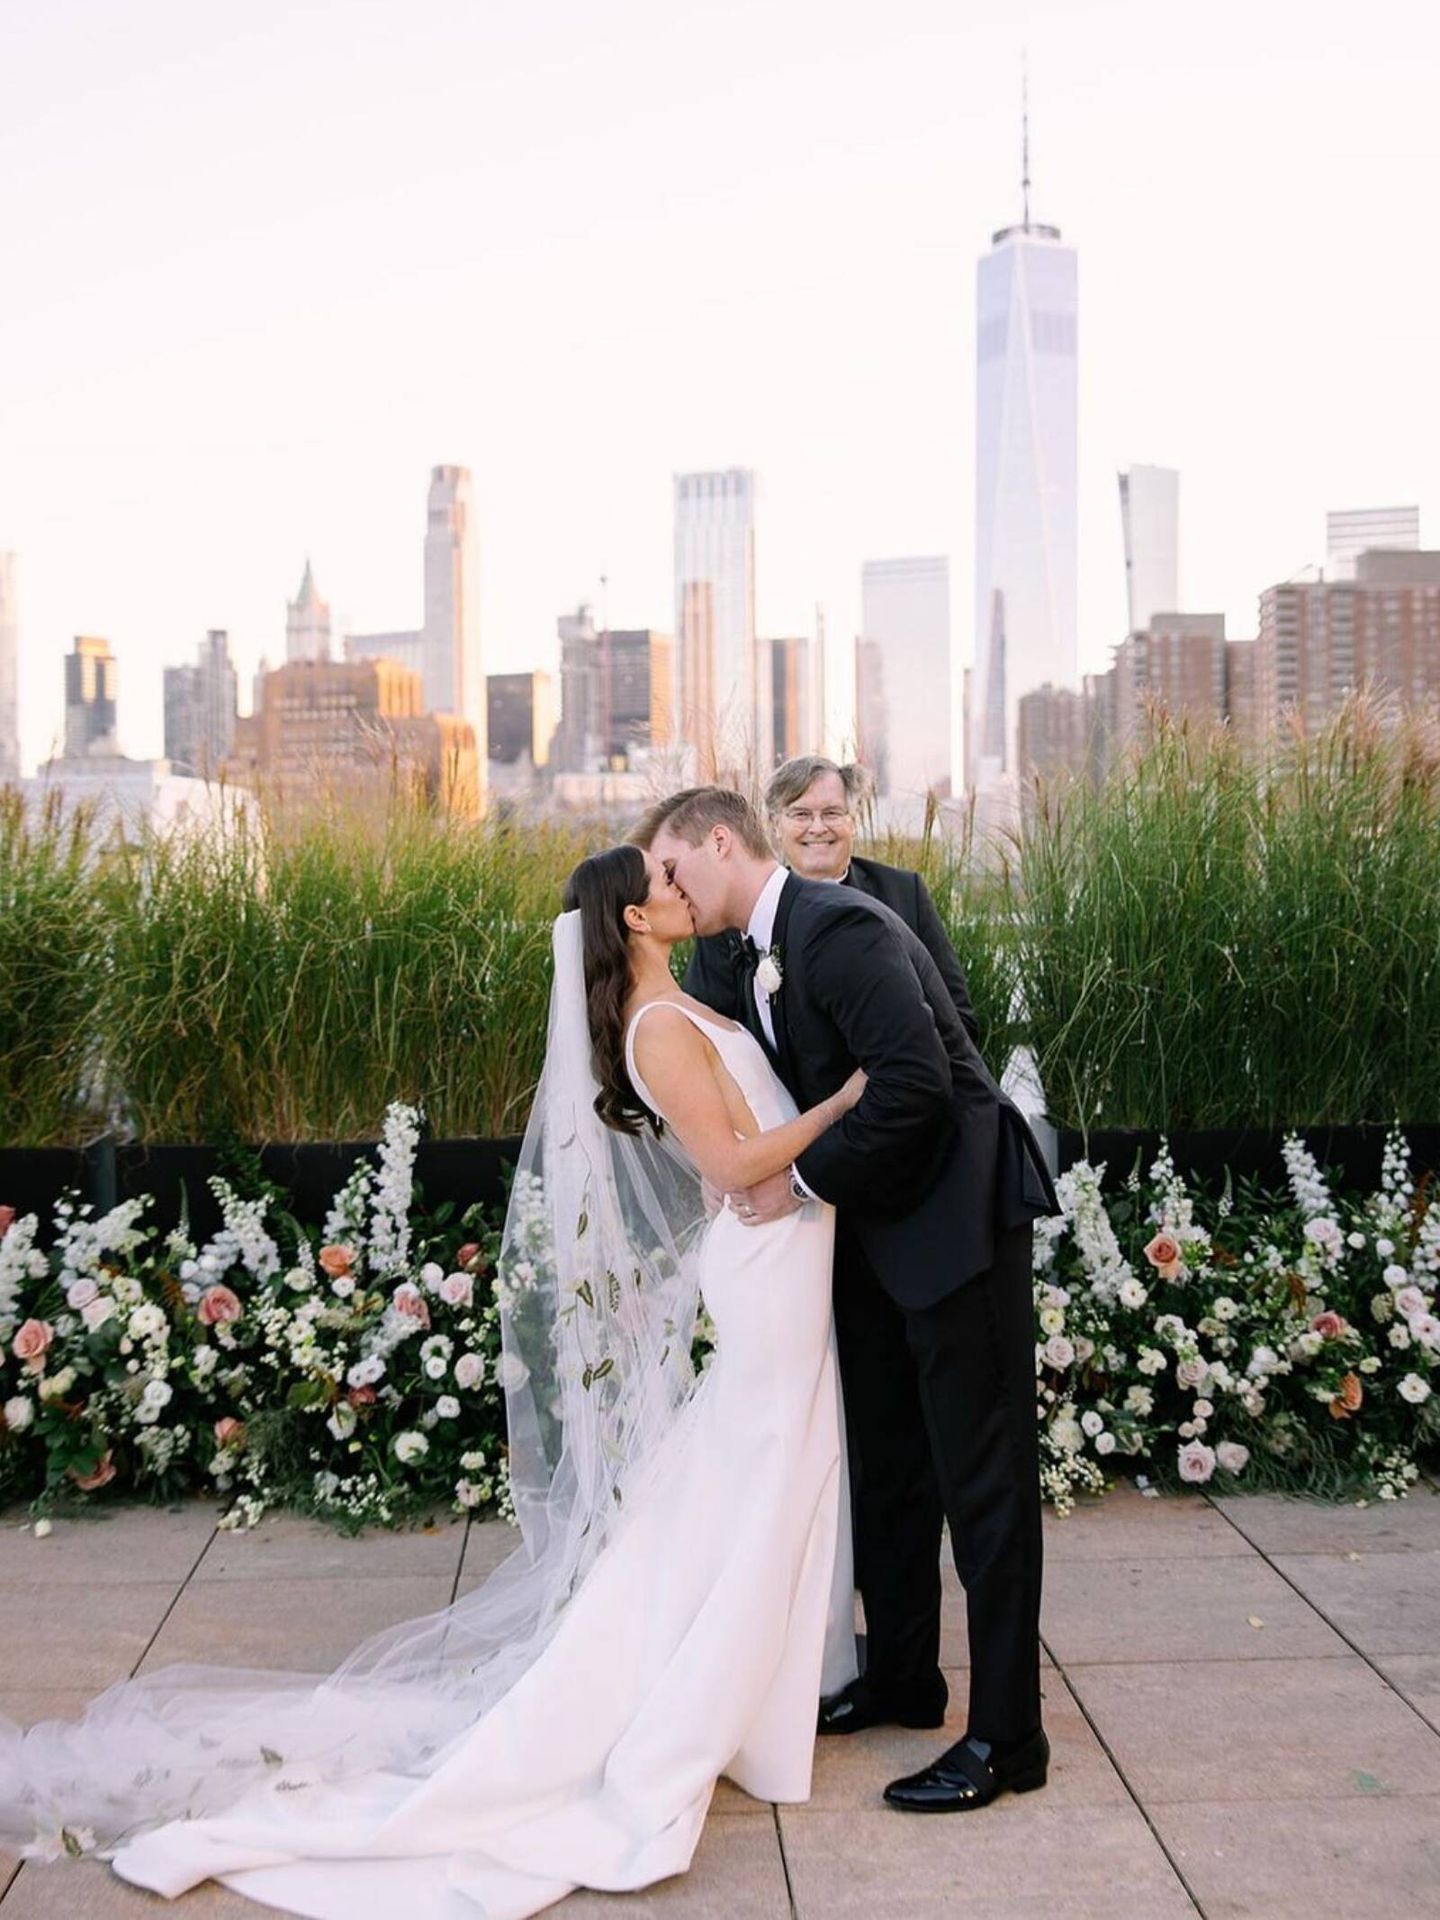 La boda en el corazón de Nueva York de Dana Ahern y Boyce Flick. (Instagram/@ danaahern)